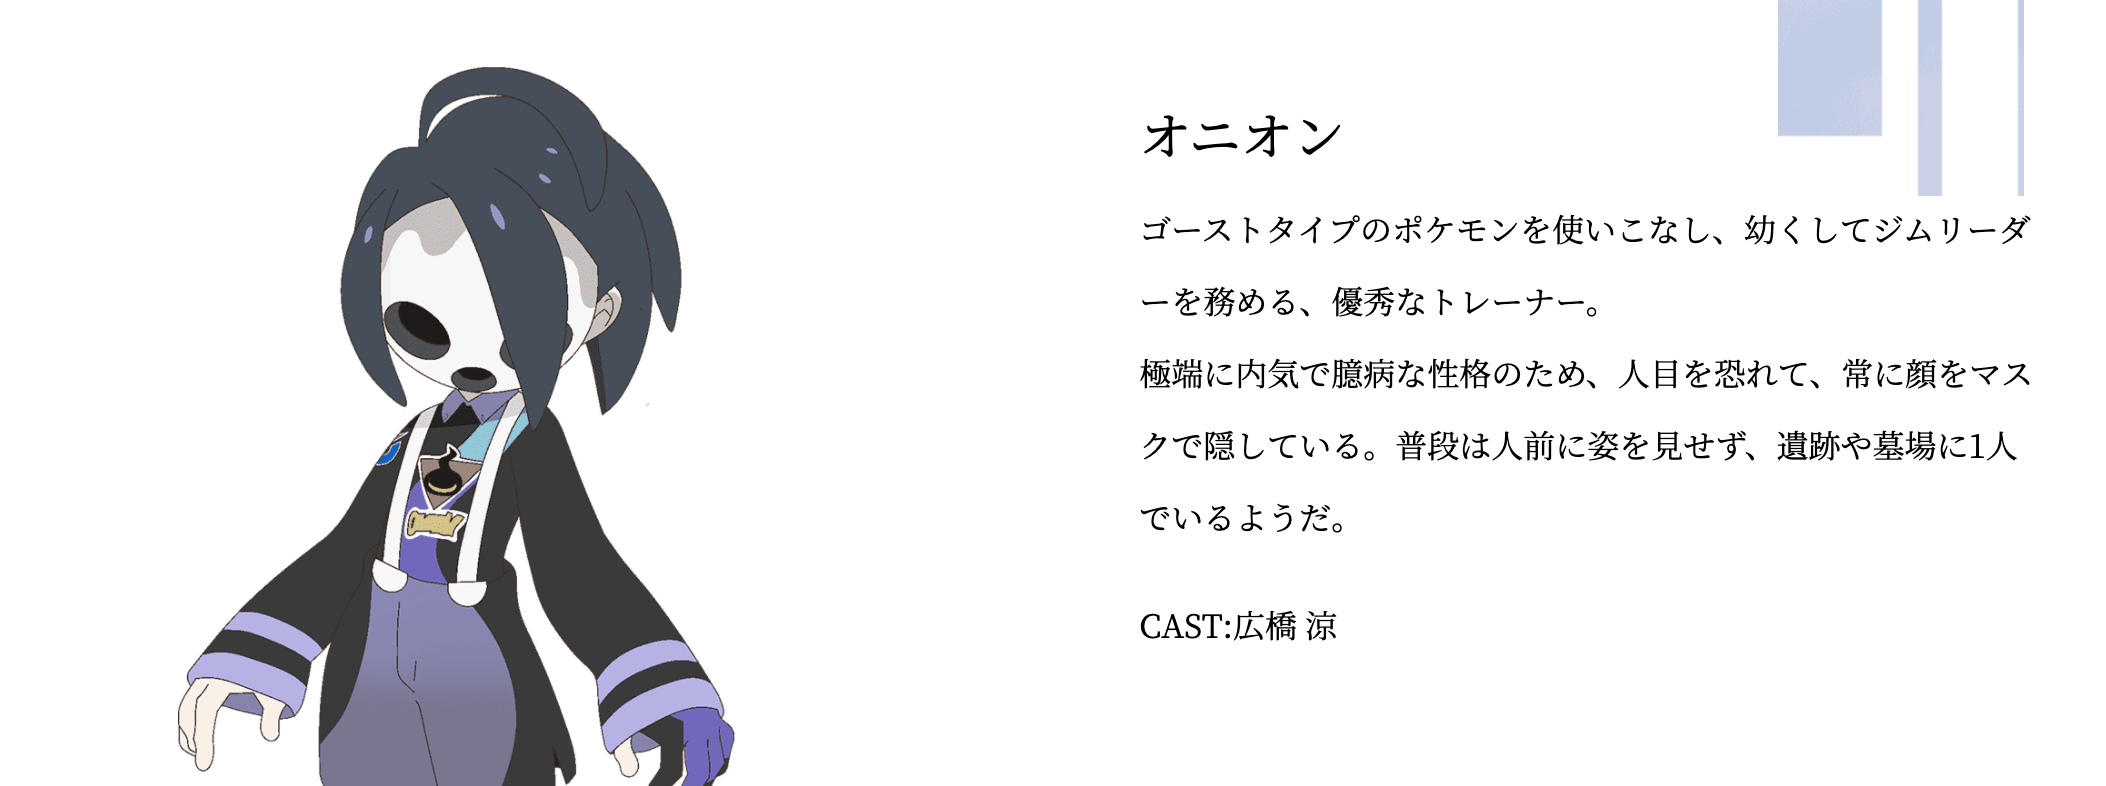 ポケモン剣盾 オリジナルアニメ 薄明の翼 第6話 月夜 を公開 掲載日 年7月4日